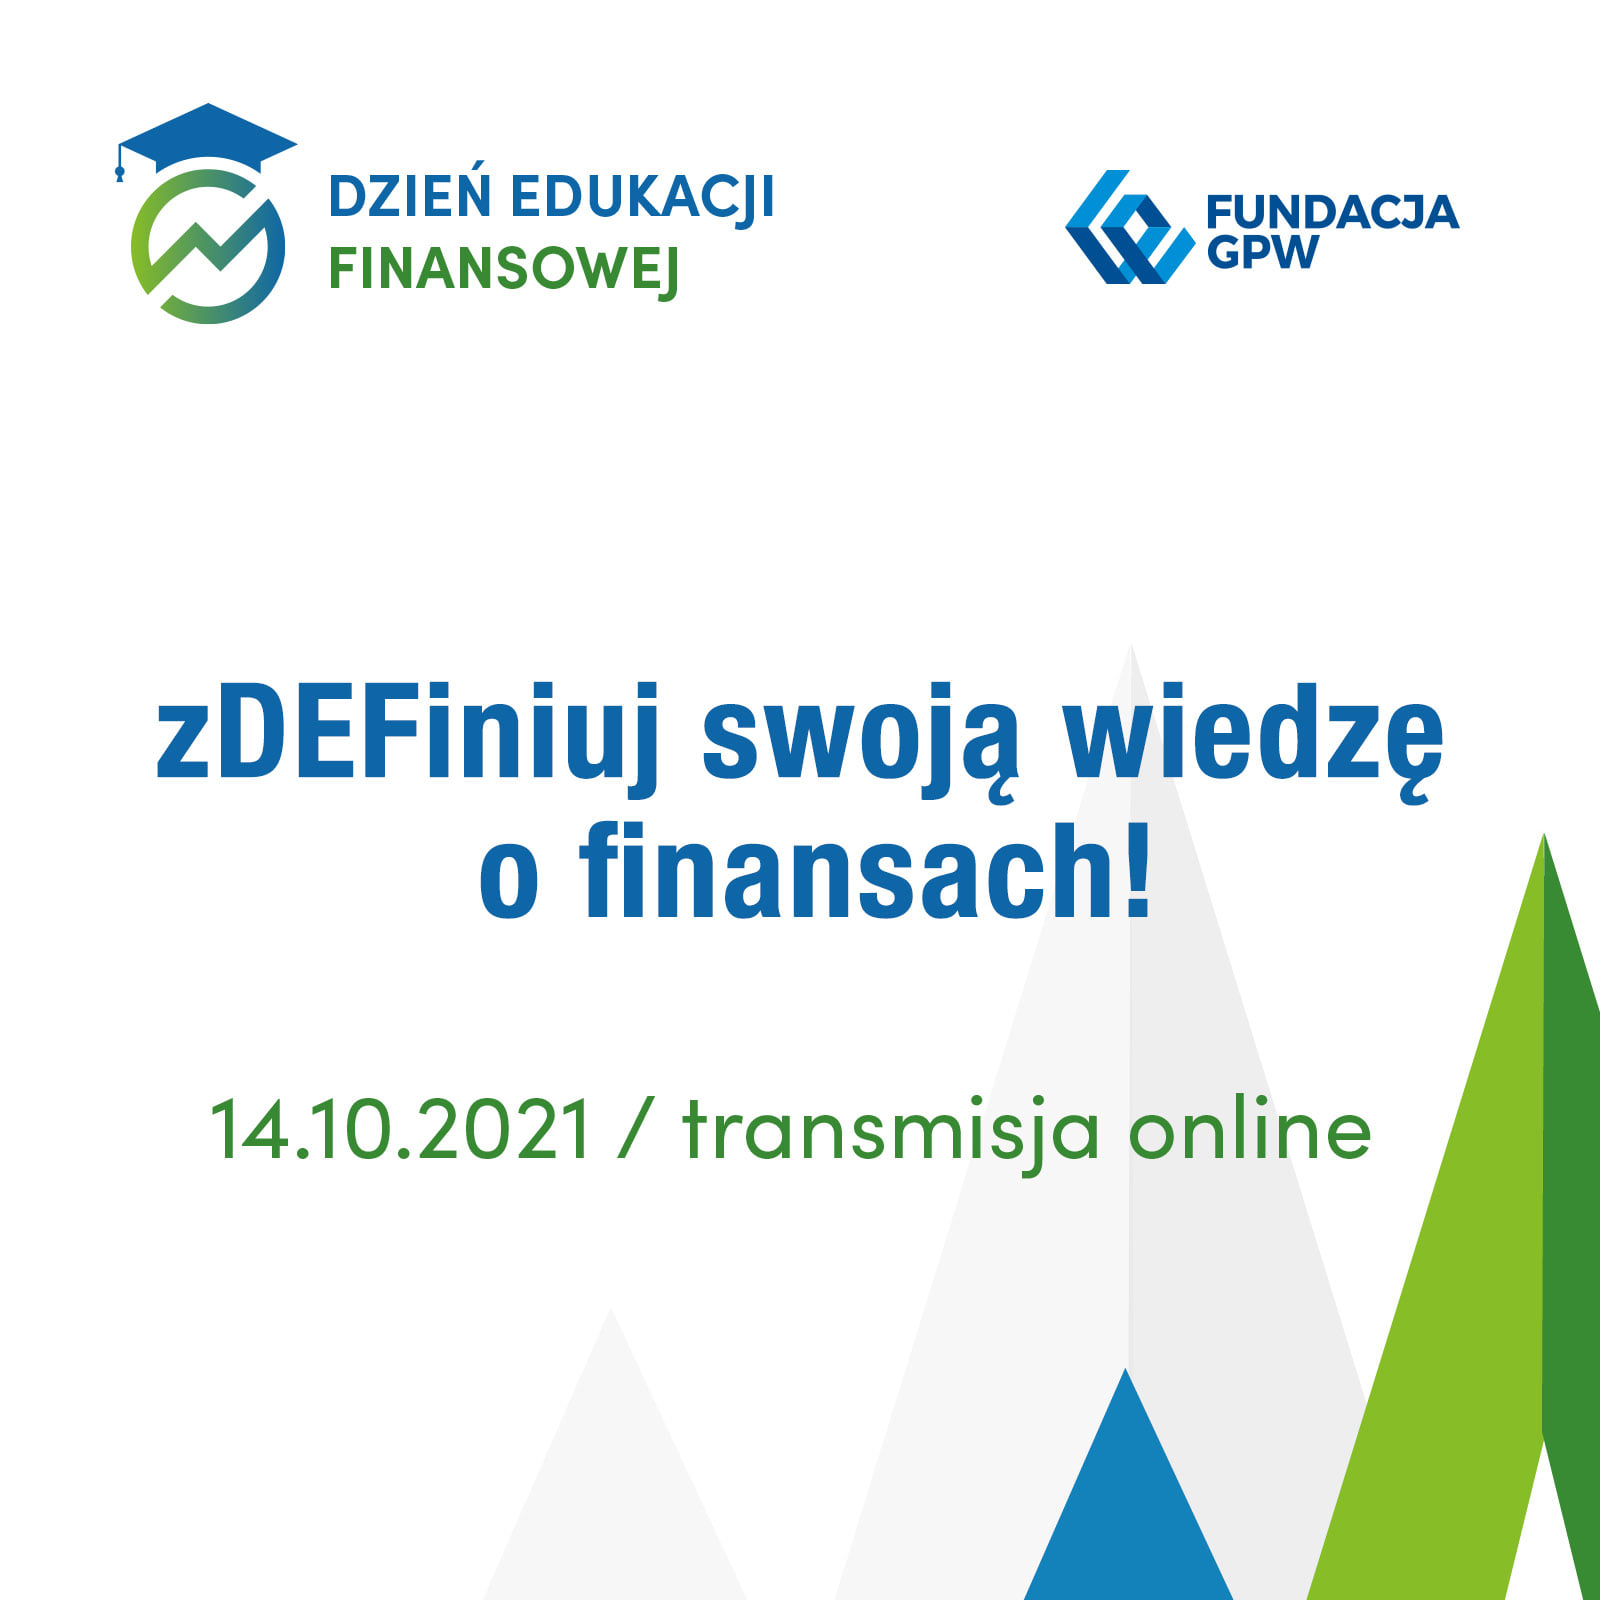 Dzień Edukacji Finansowej - zaproszenie